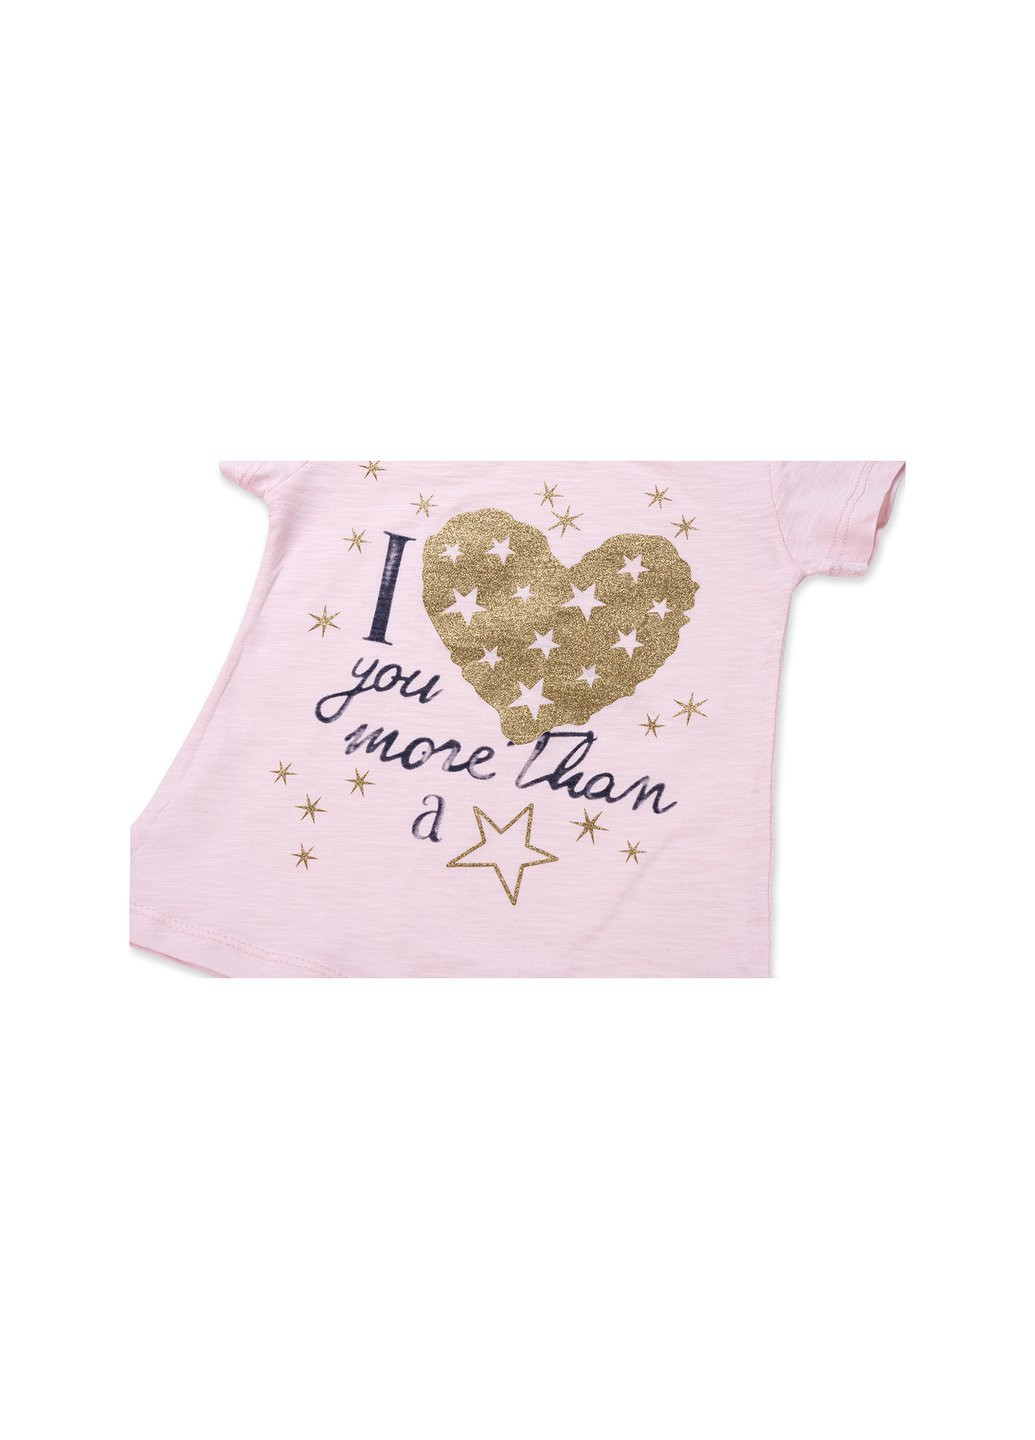 Комбинированный летний набор детской одежды с золотым сердцем (8735-92g-pink) Breeze